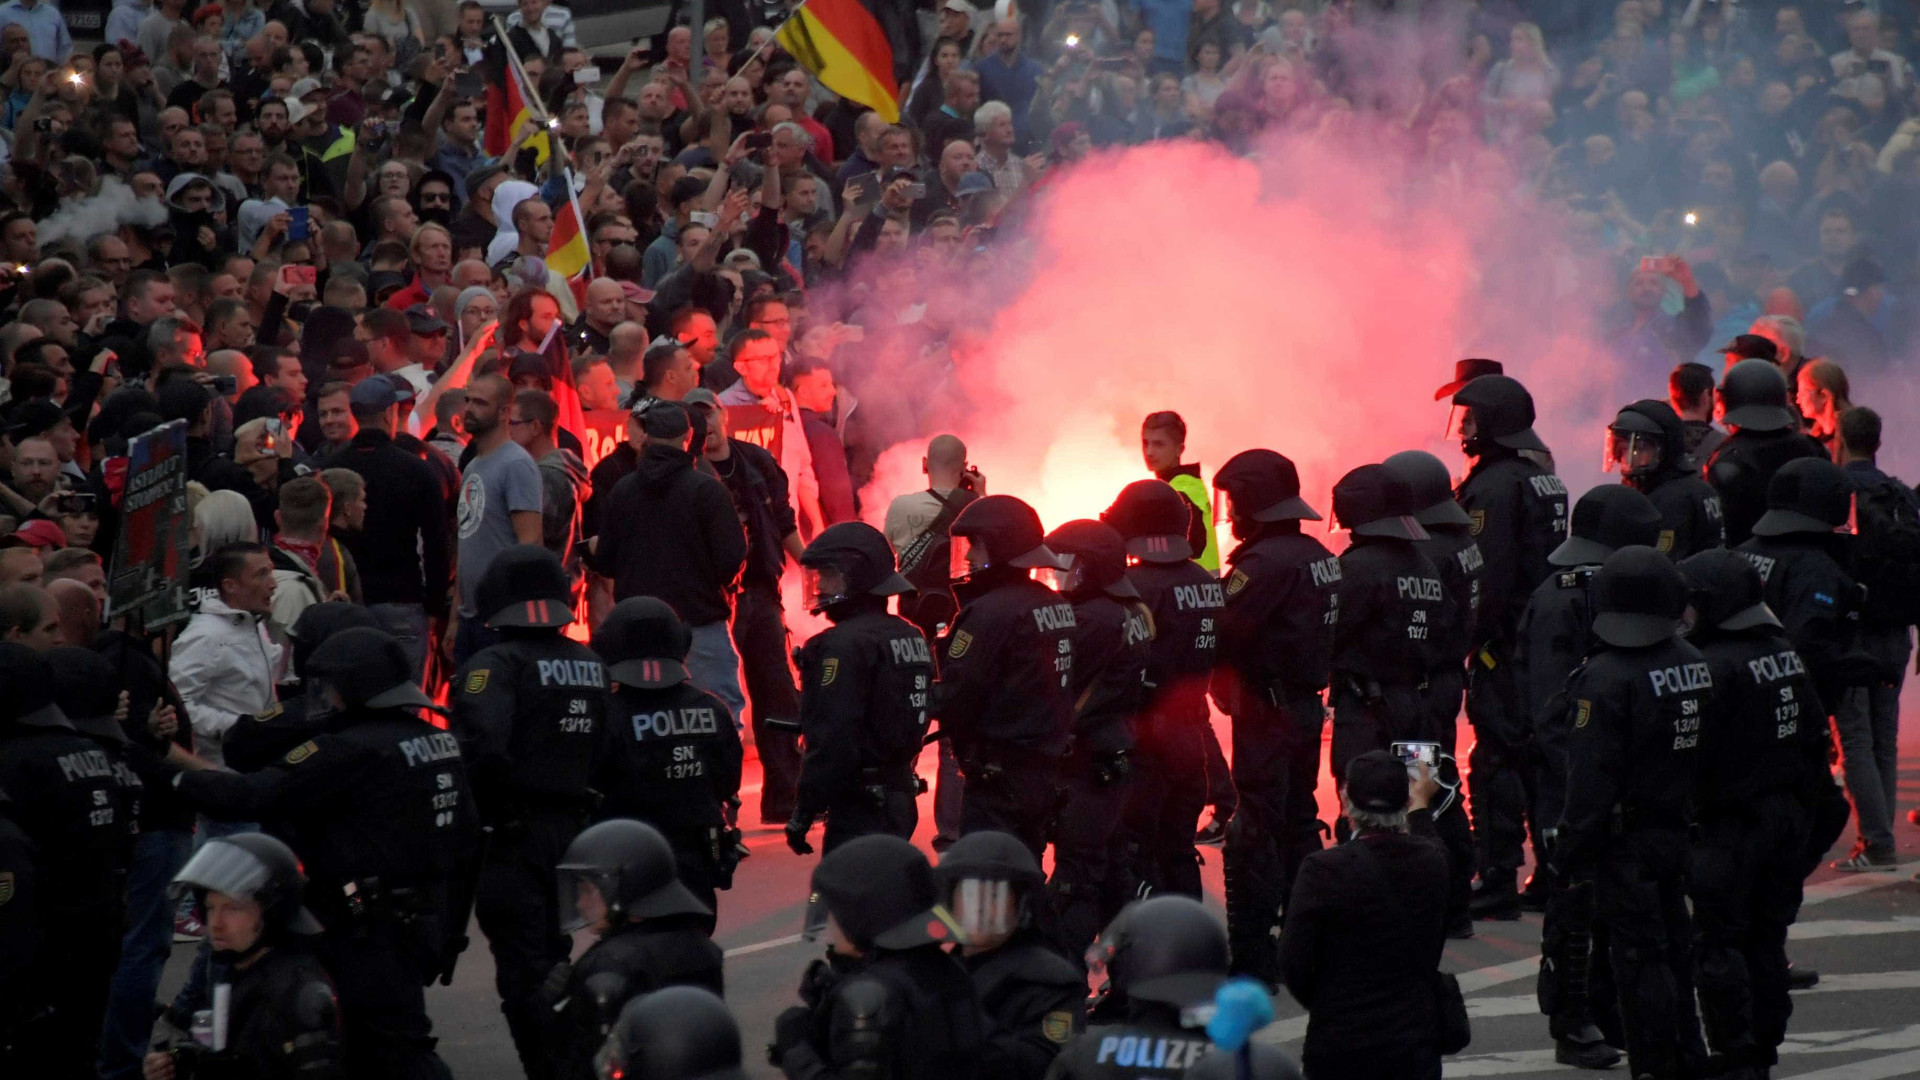 Merkel diz que 'ódio nas ruas' não pertence à Alemanha